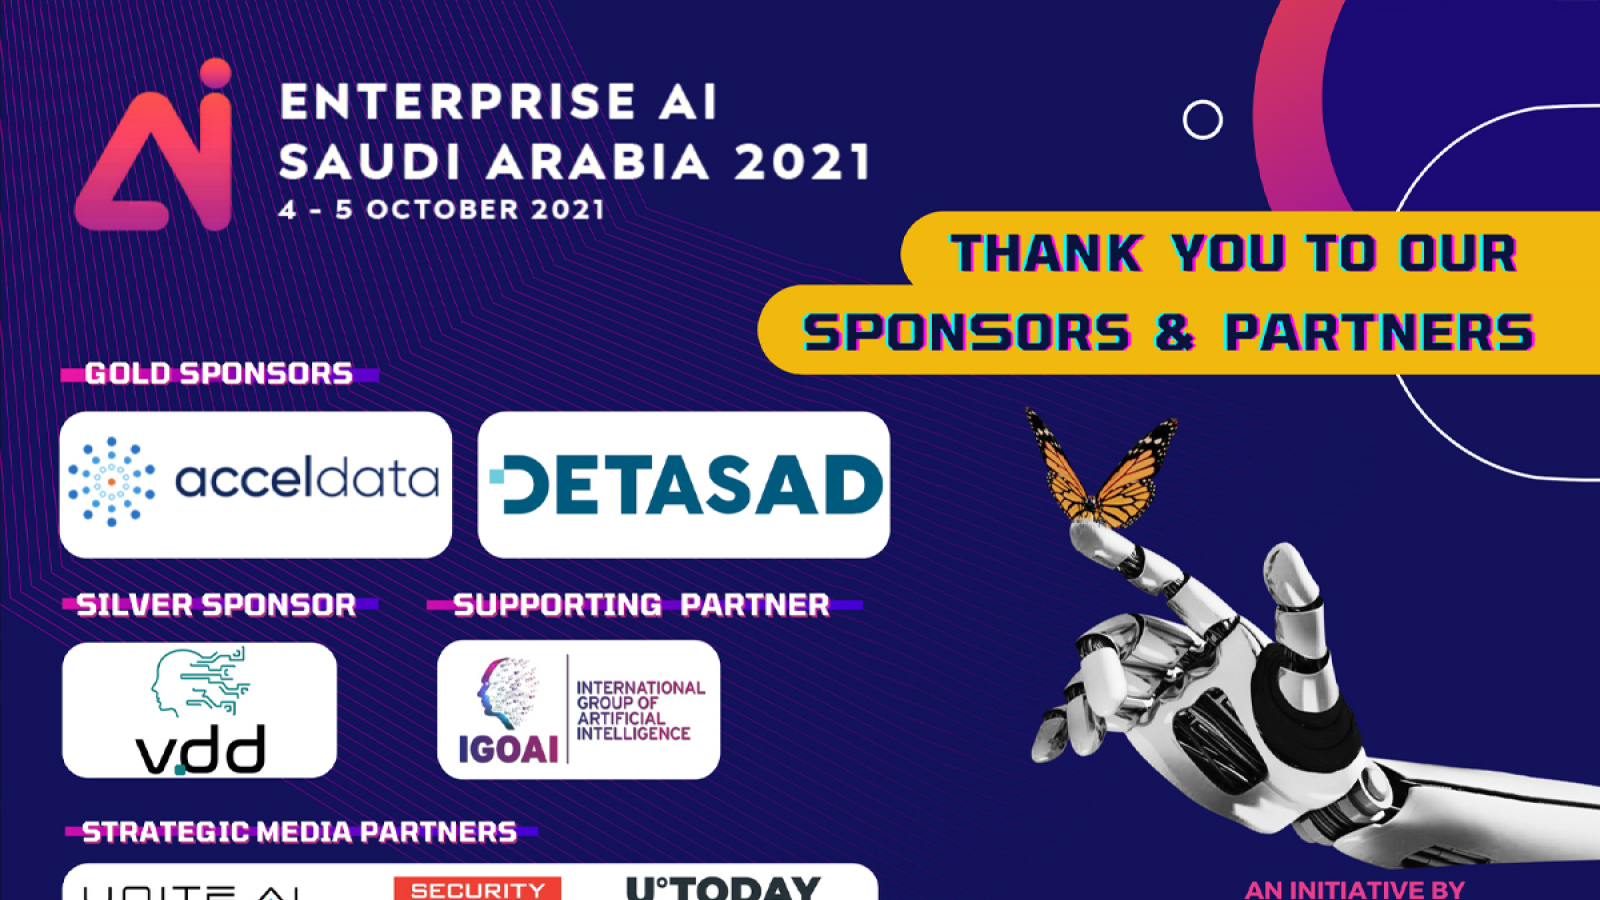 Summary of the 2-day Virtual Summit Enterprise AI Saudi Arabia 2021